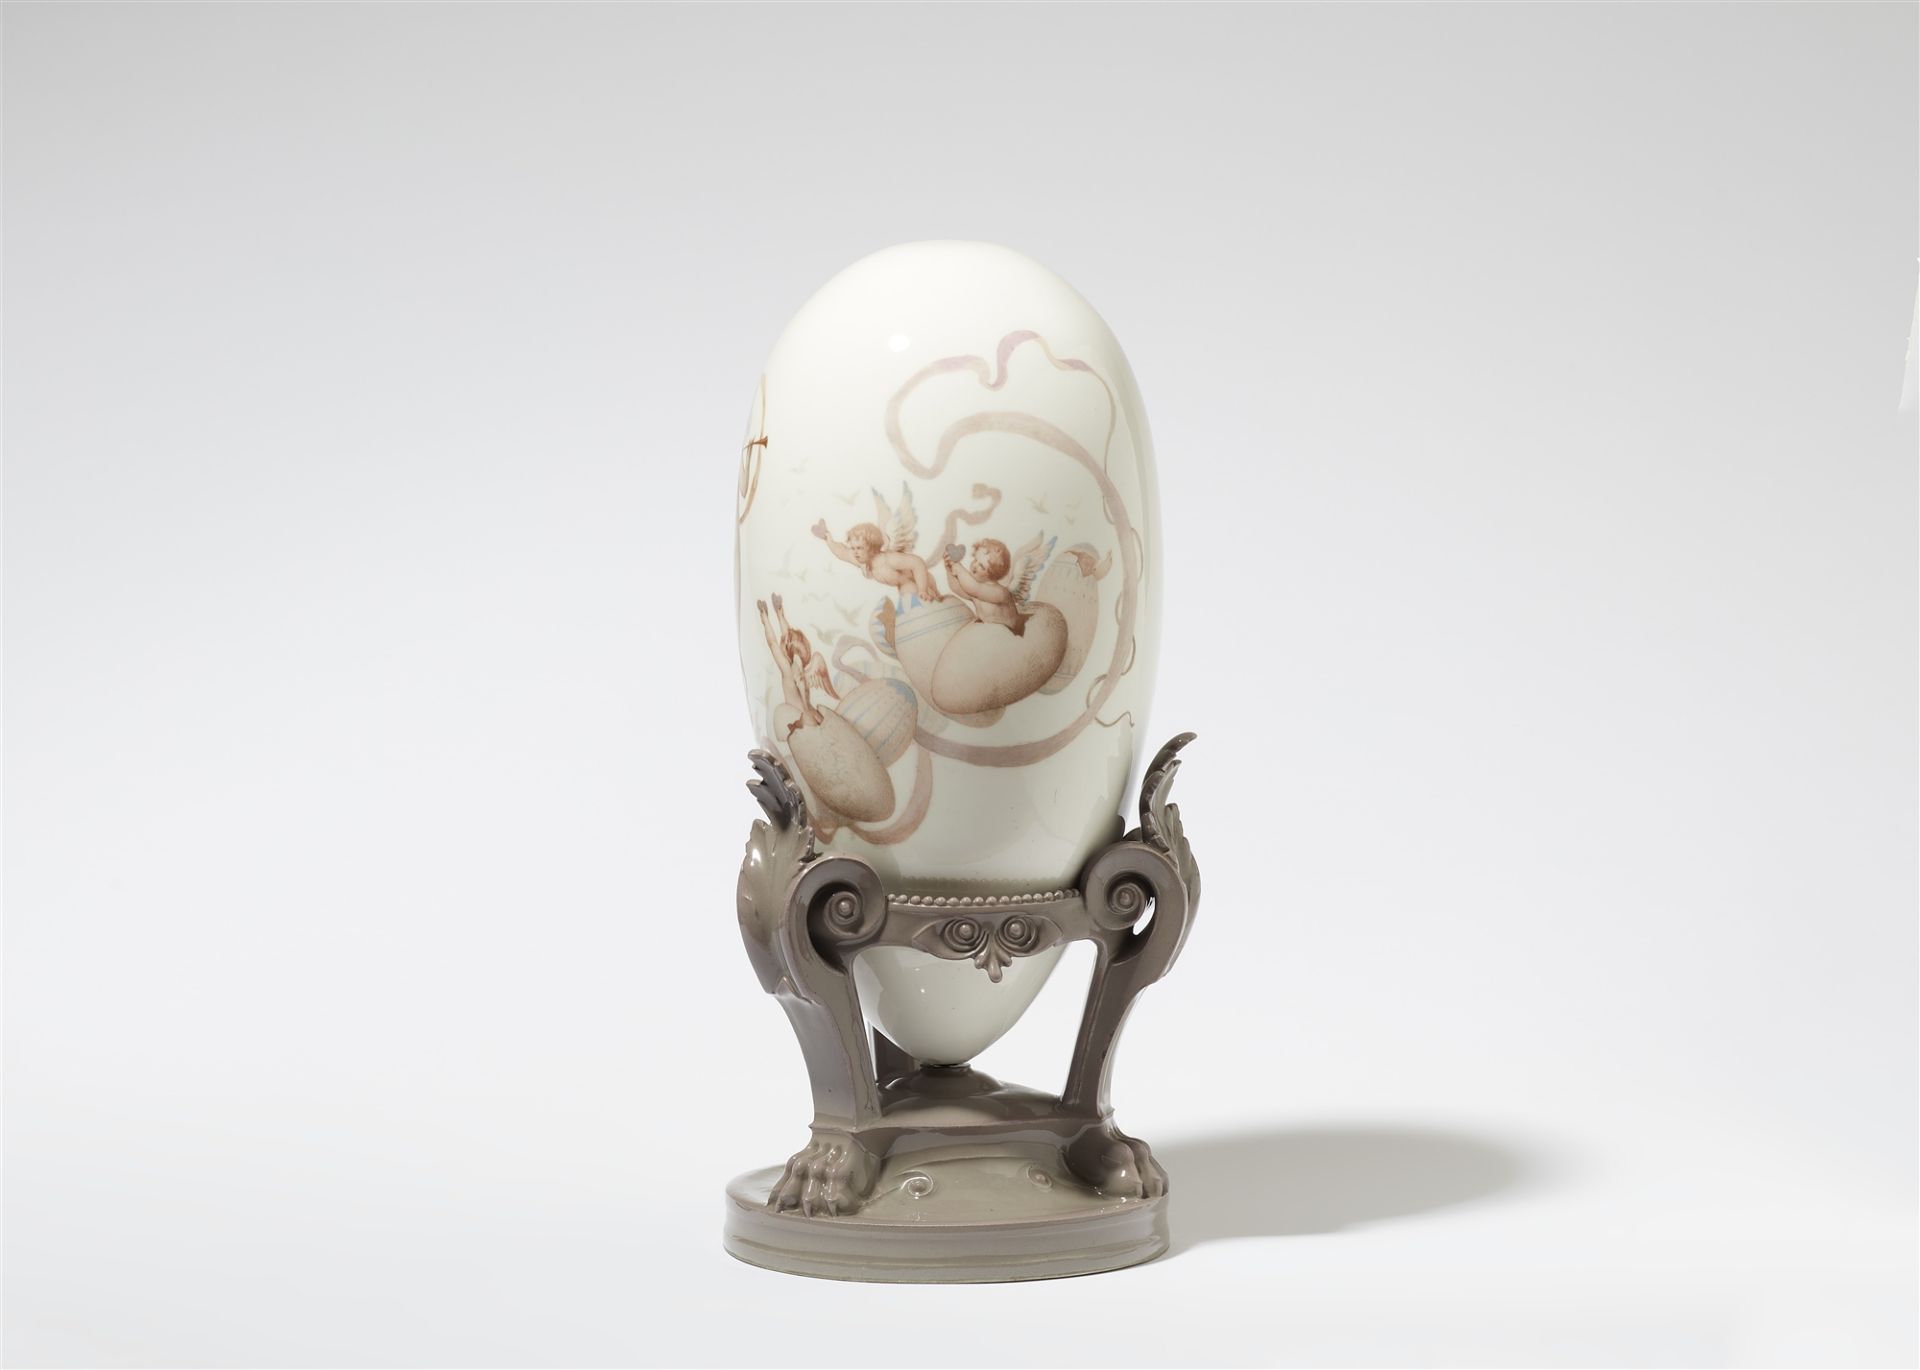 A decorative Sèvres porcelain egg, "Printemps" - Image 2 of 3